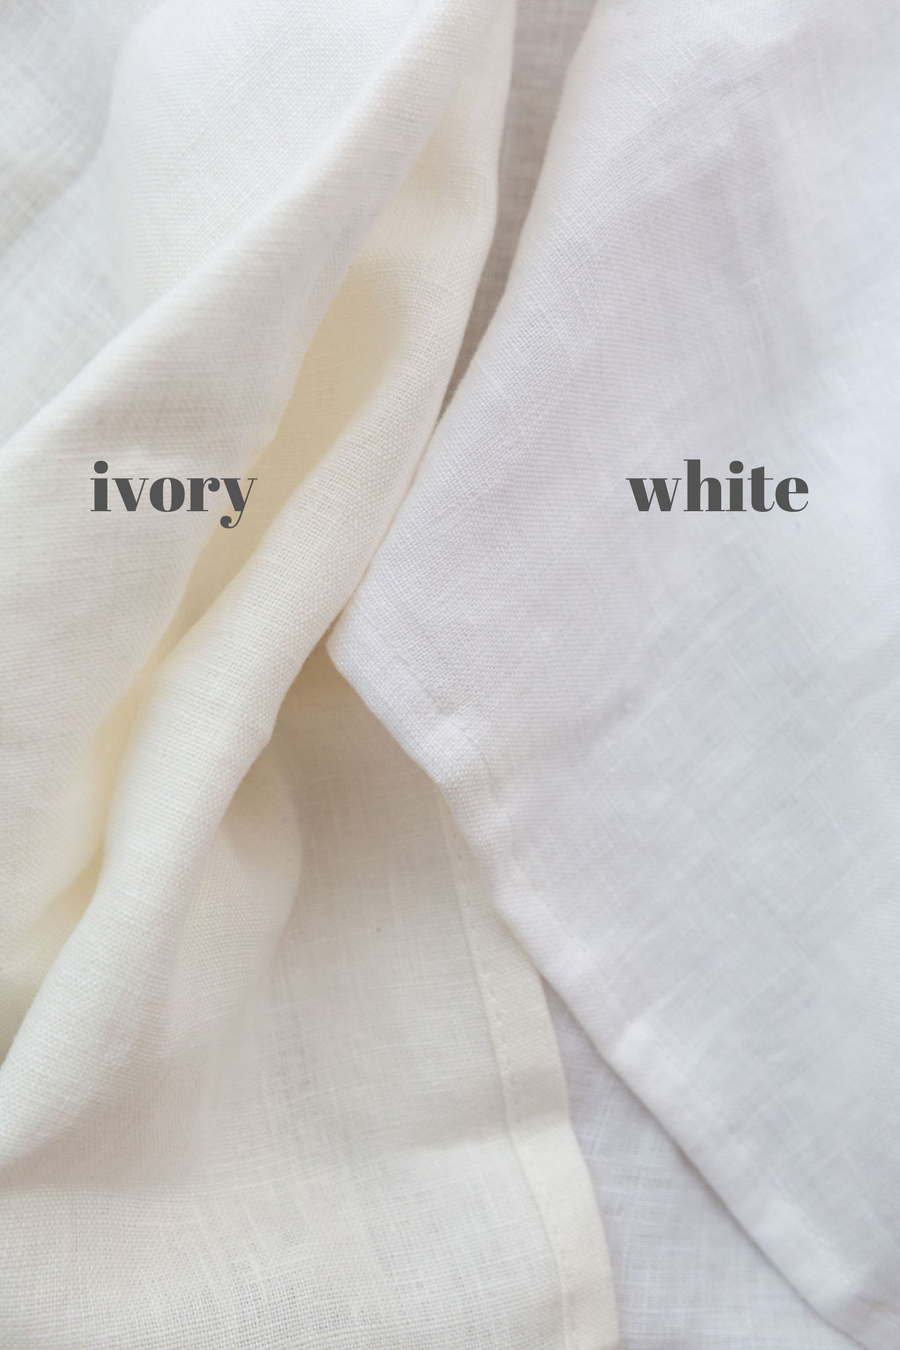 white linen napkin